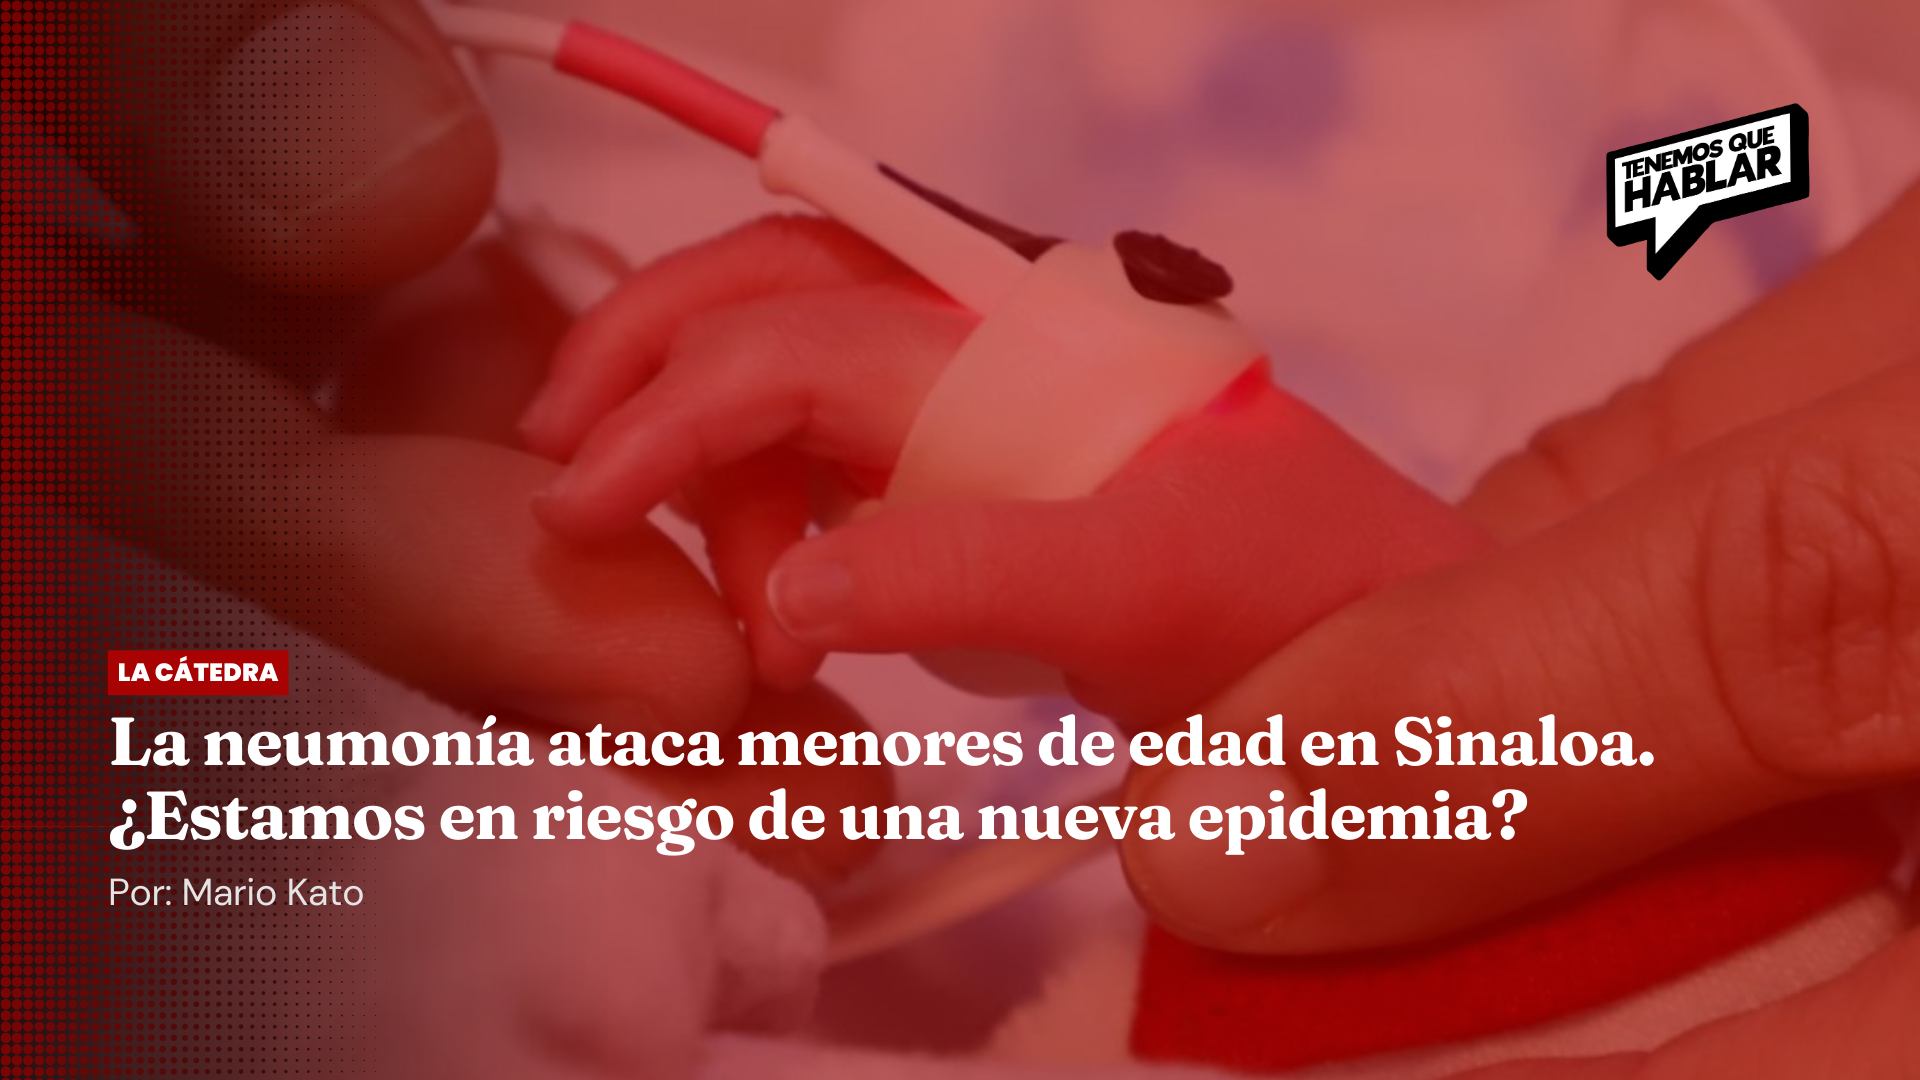 La neumonía ataca menores de edad en Sinaloa. ¿Estamos en riesgo de una nueva epidemia?